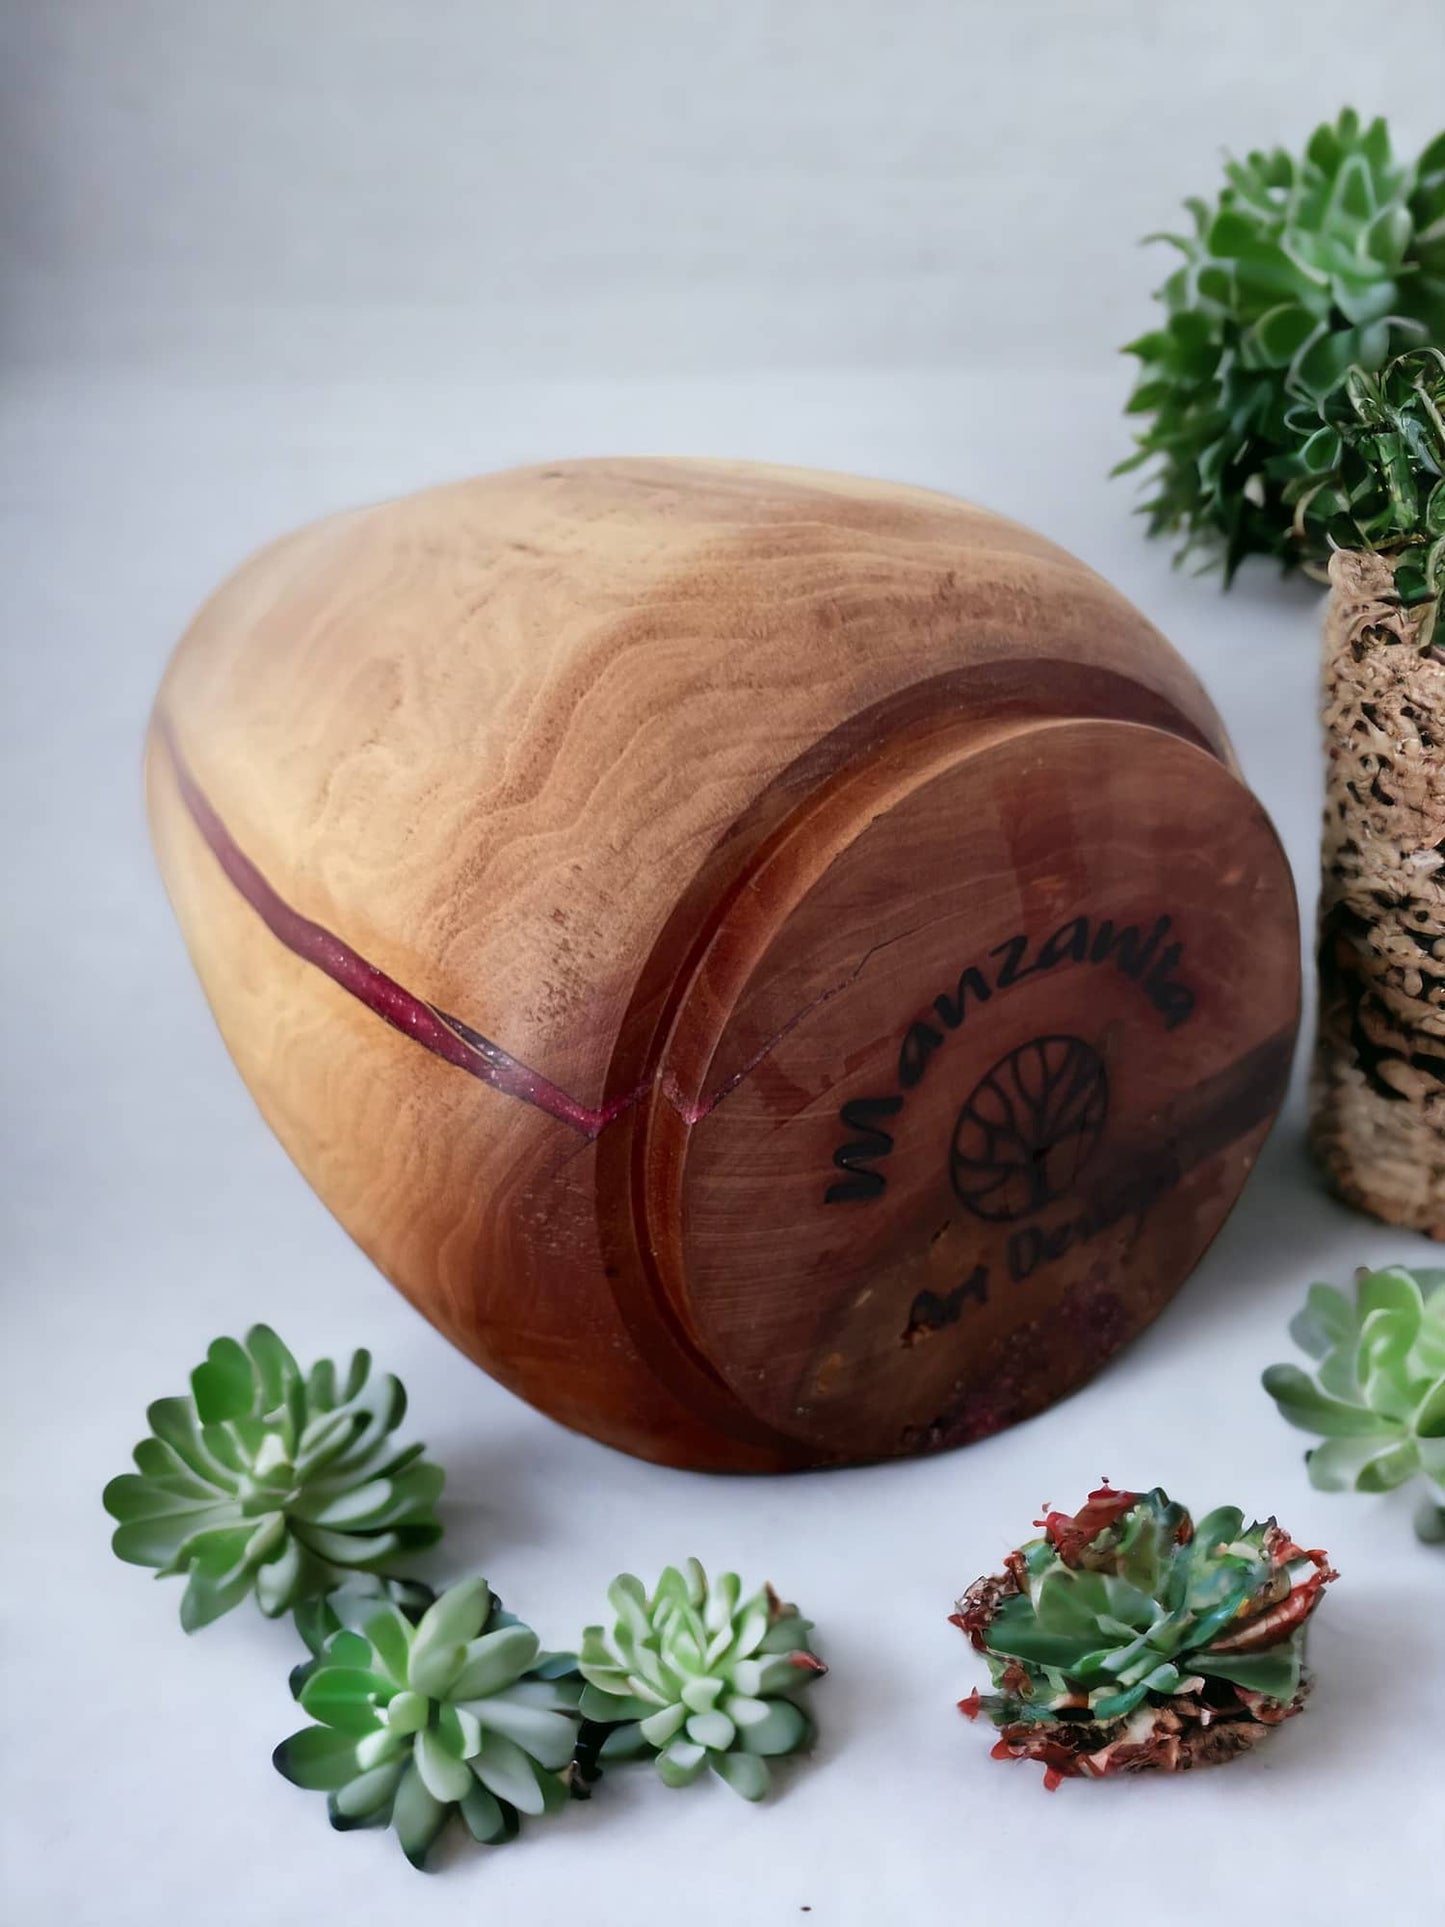 Natural beauty and charm. Manzanita Wood vase with resin. 8”H x 4.5”Dia